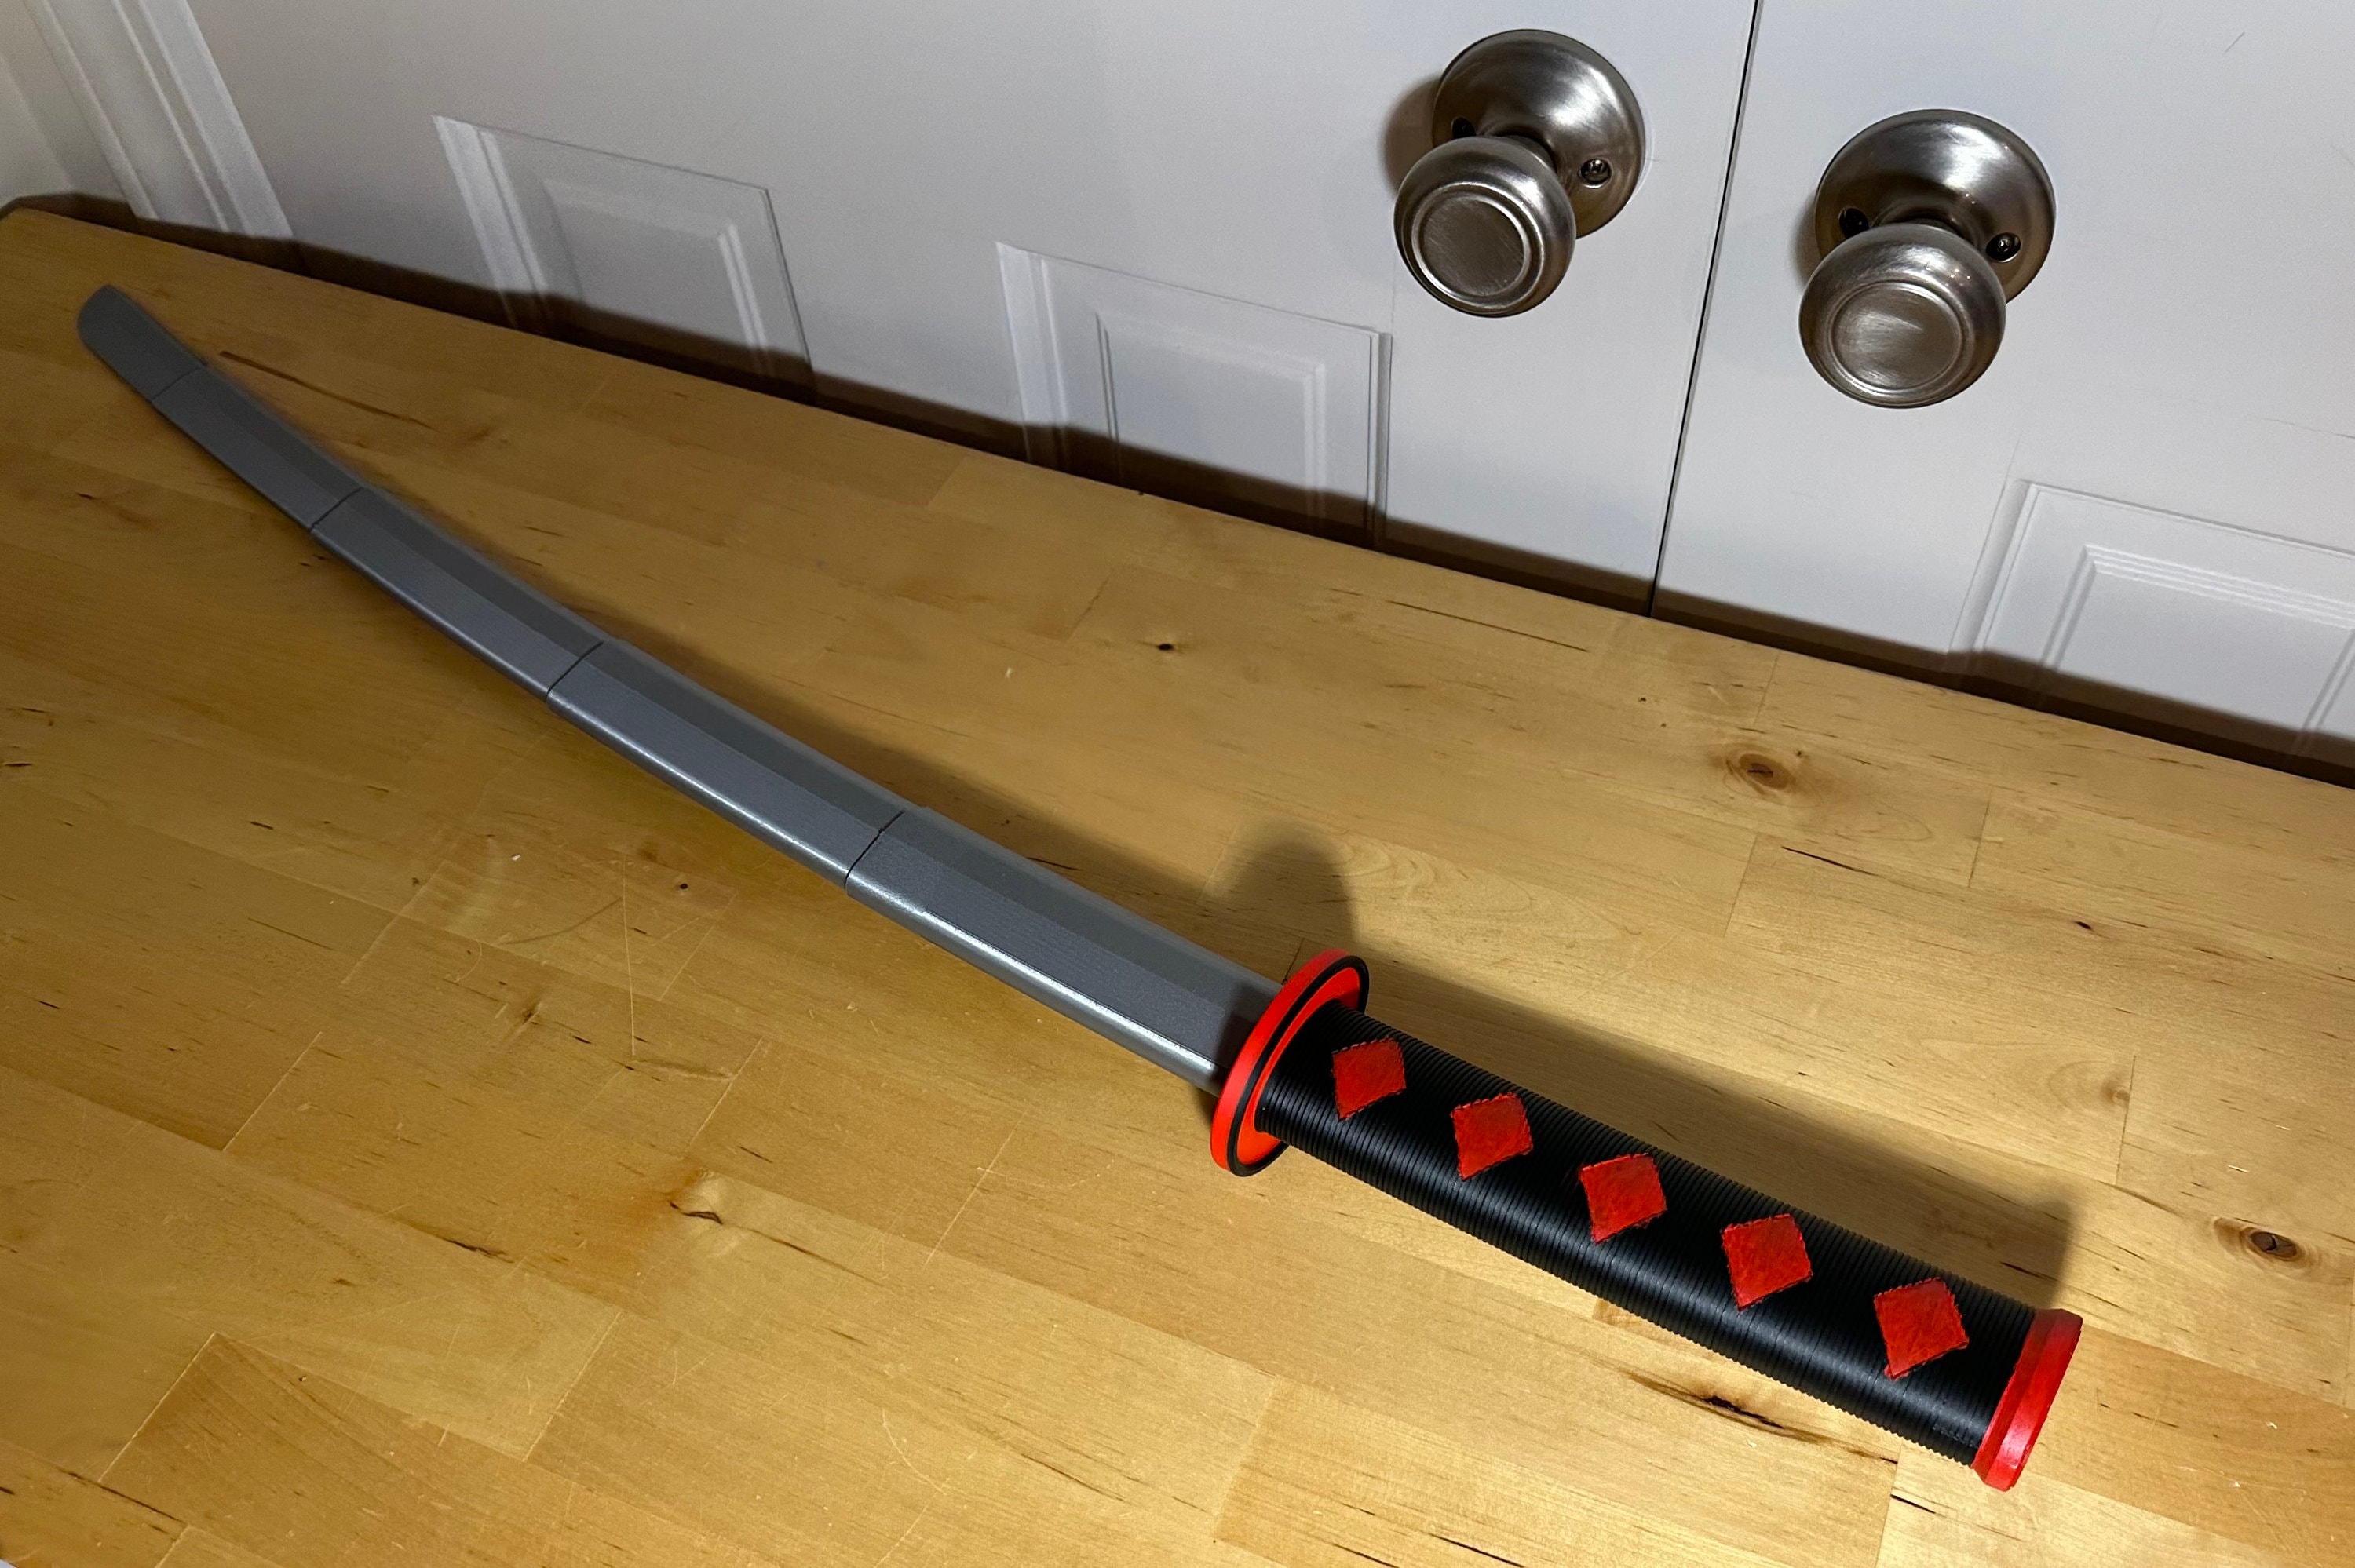 Retractable Daggar, Sword, Japanese Sword, 3D Printed Daggar, Plastic, 3D  Printed Sword, Retractable Sword, American Sword, Halloween Sword 